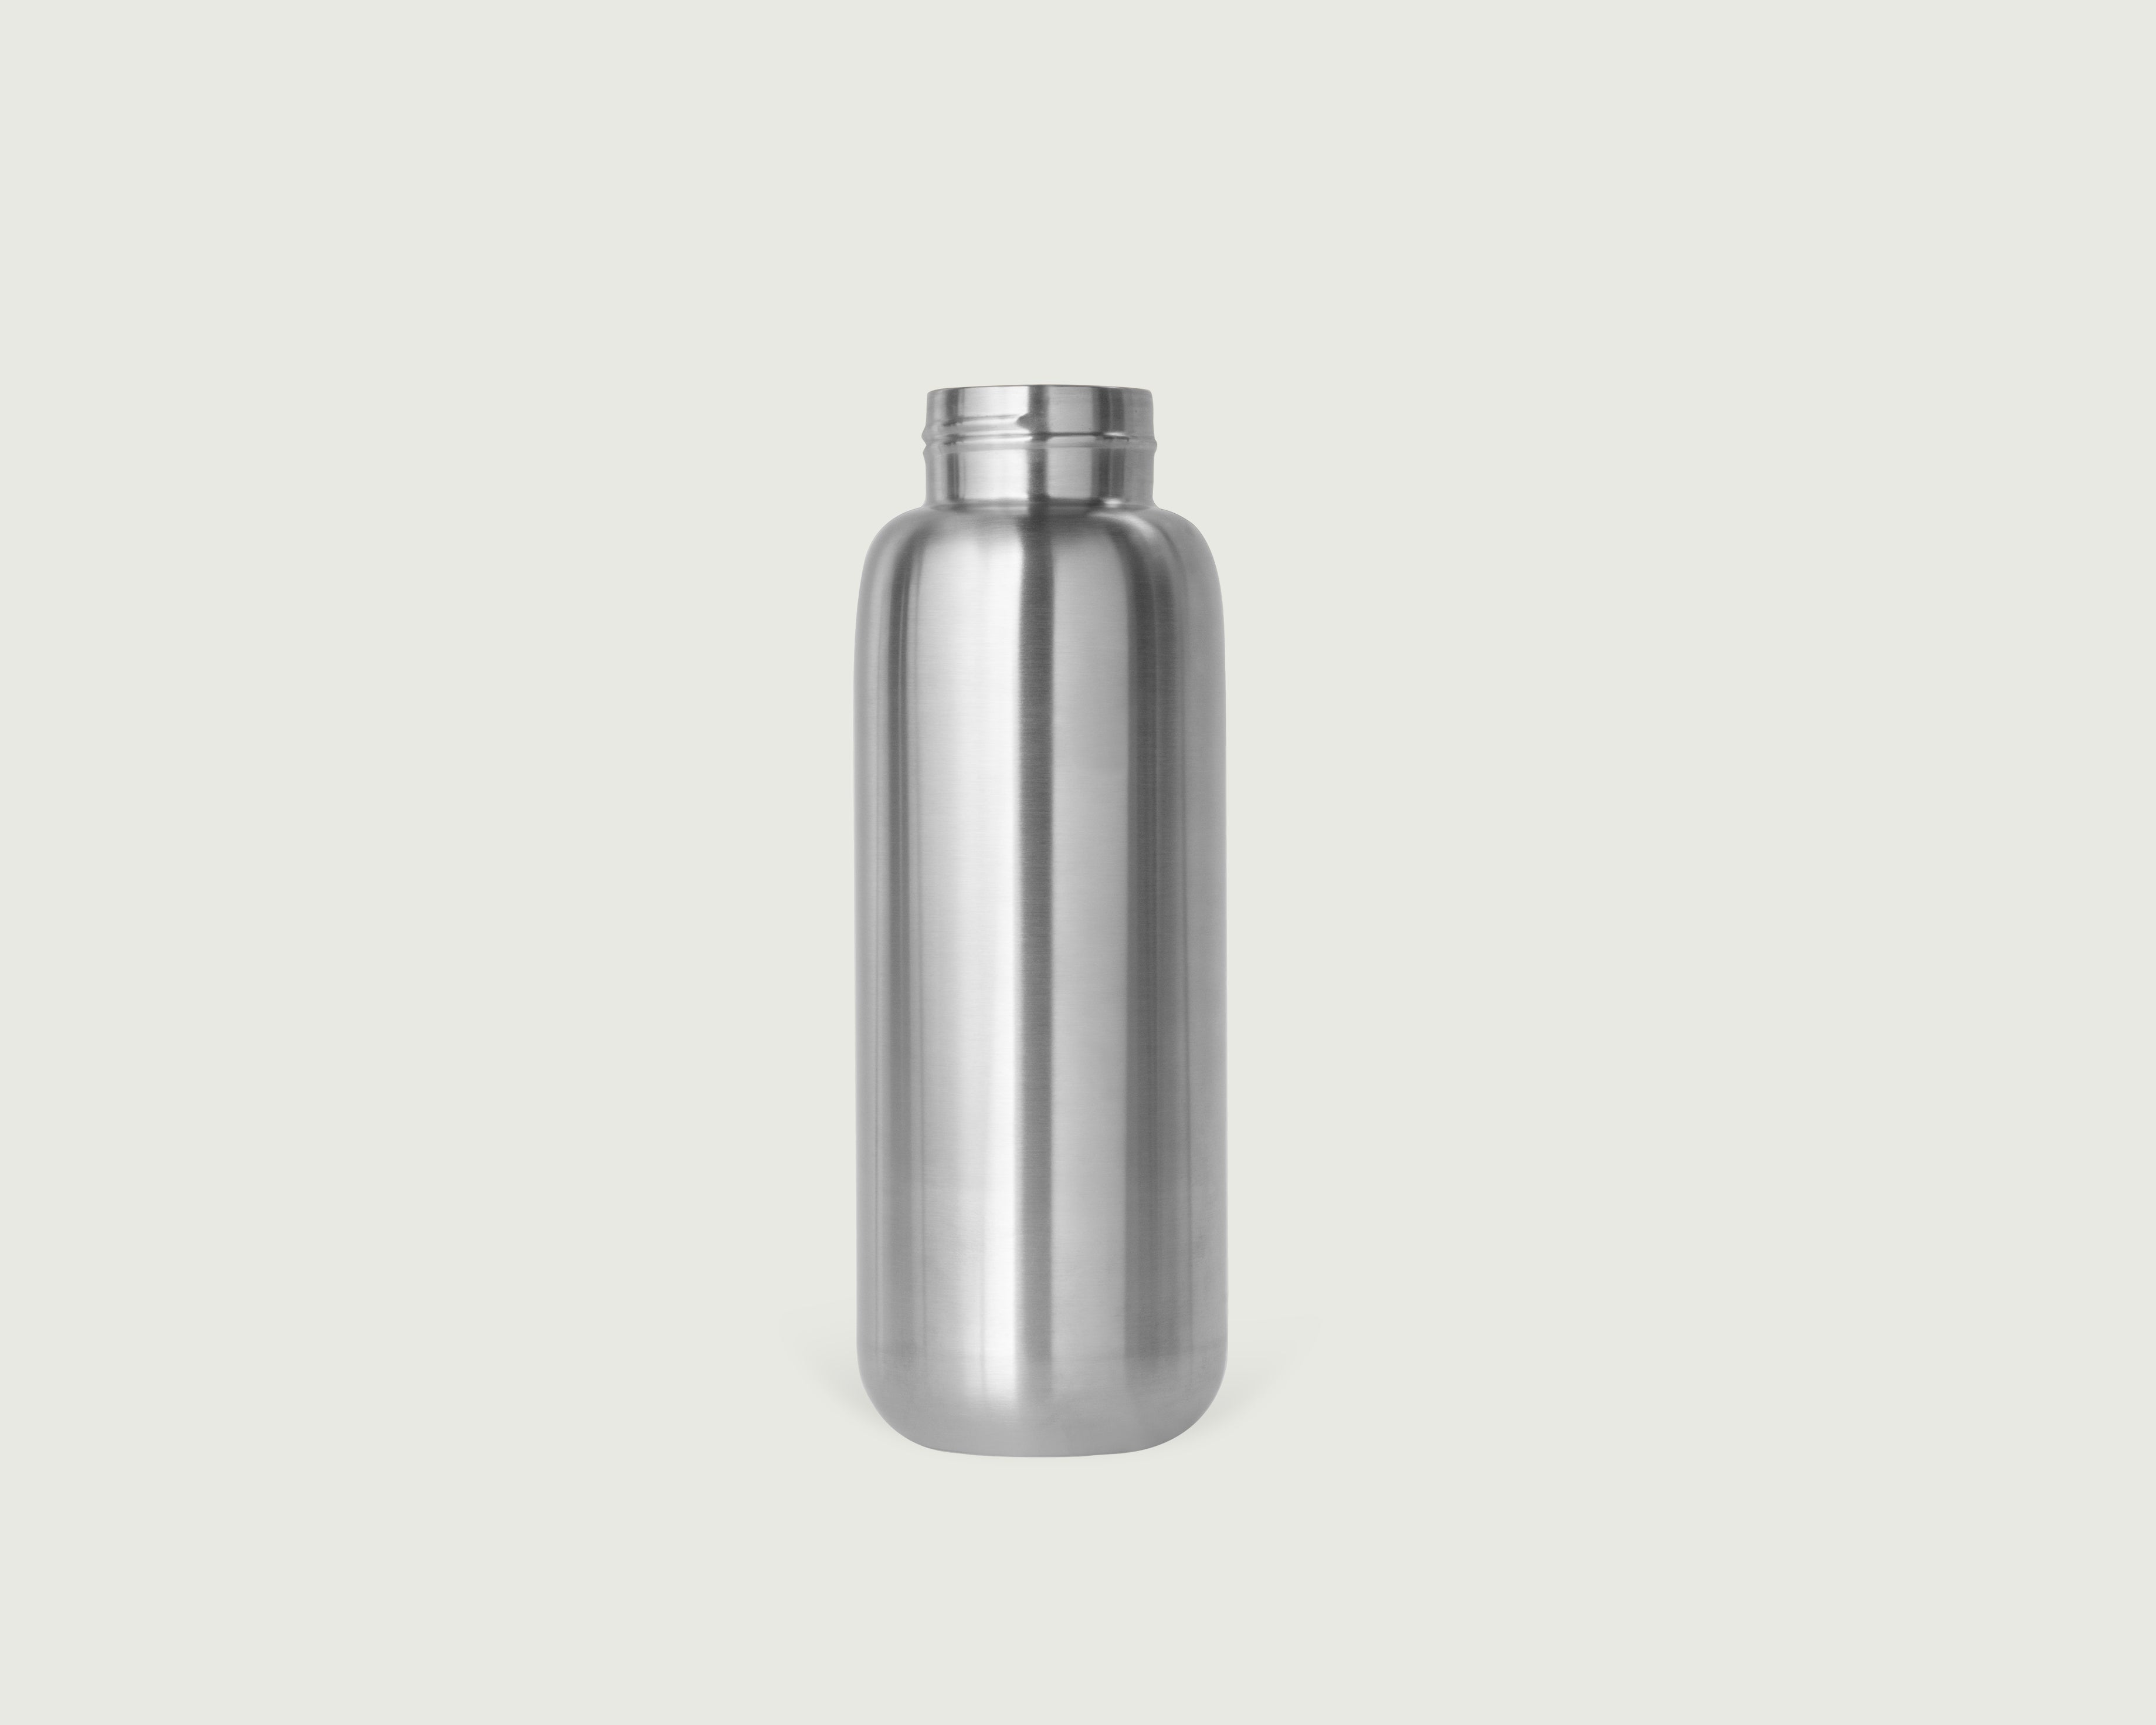 Chrome::Flask tumbler bottle gray  front